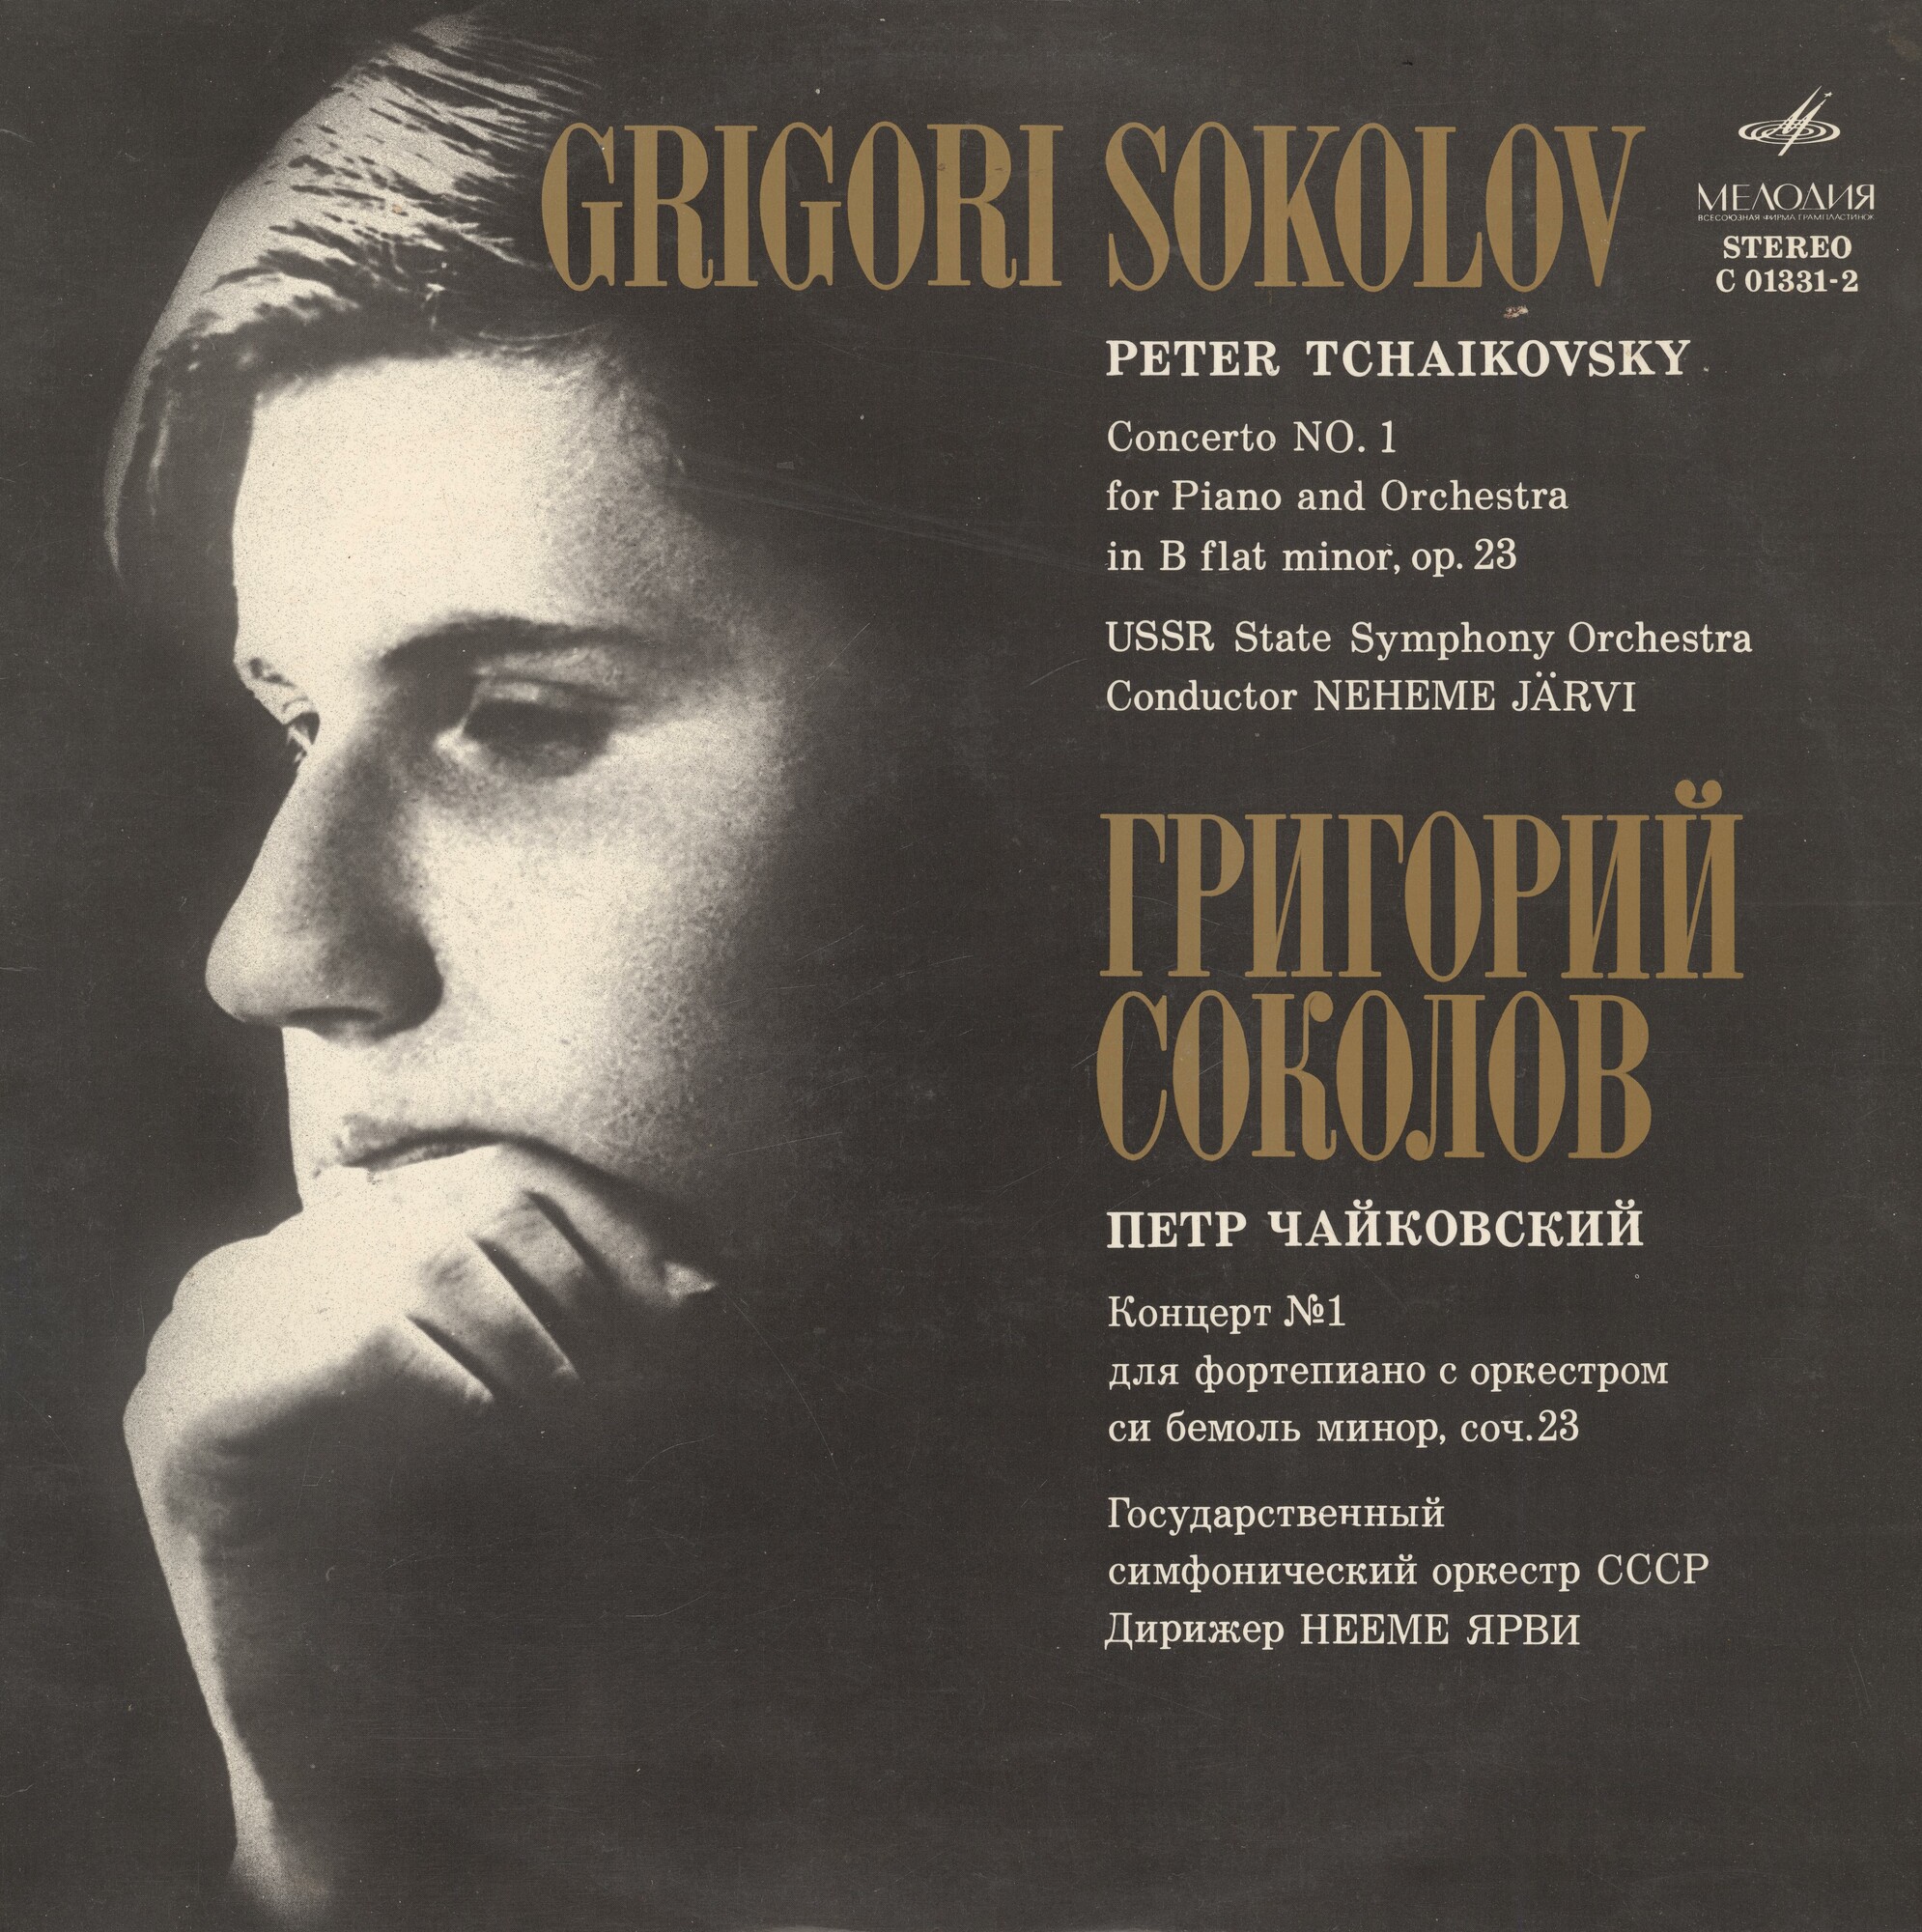 П. Чайковский - Концерт № 1 для ф-но с оркестром - Григорий Соколов